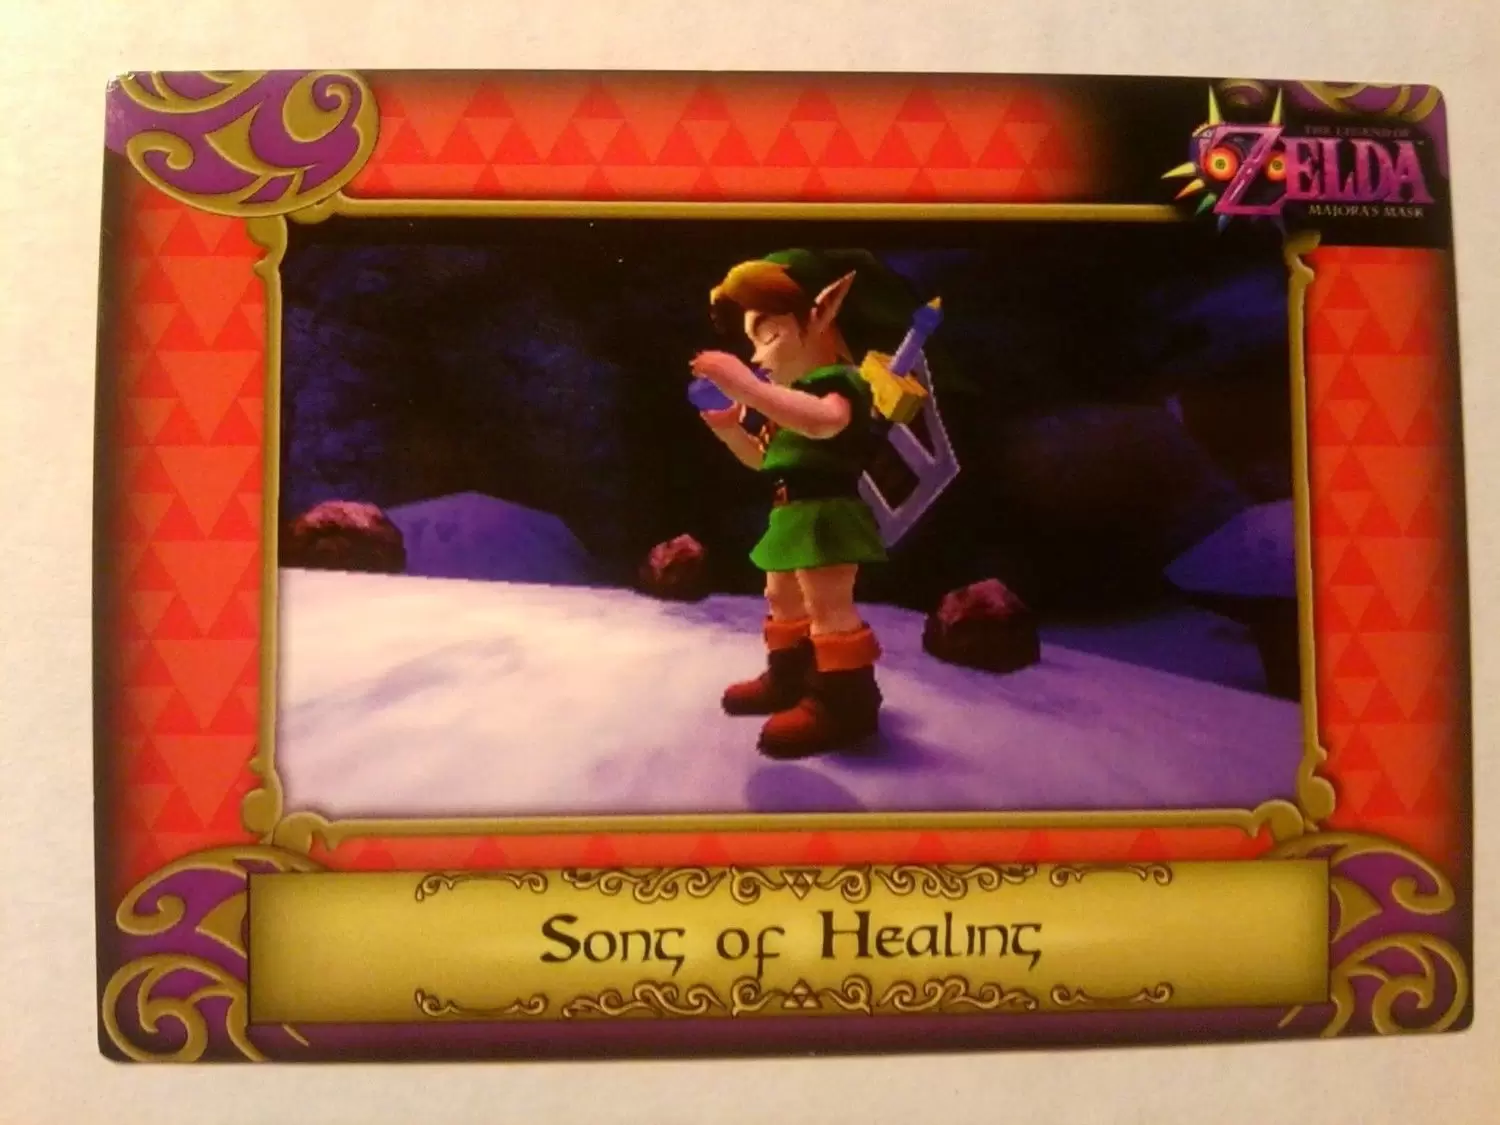 The Legend of Zelda - Song of Healing